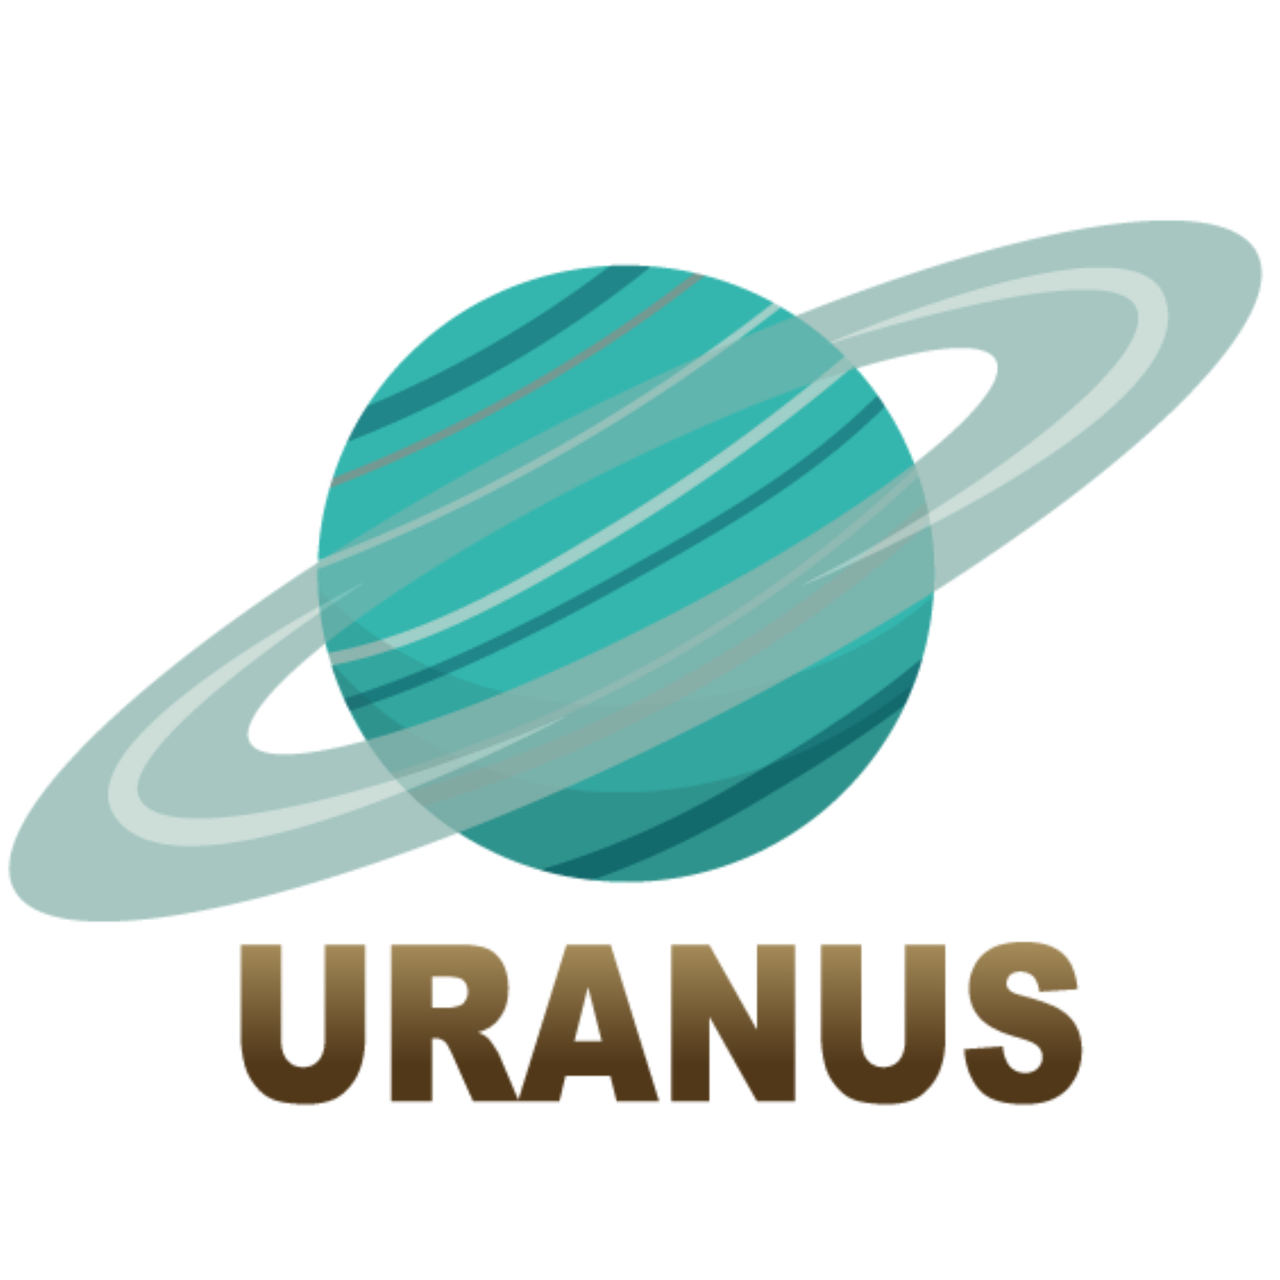 Descubriendo los misterios de Urano: ¿Qué hay de interesante?